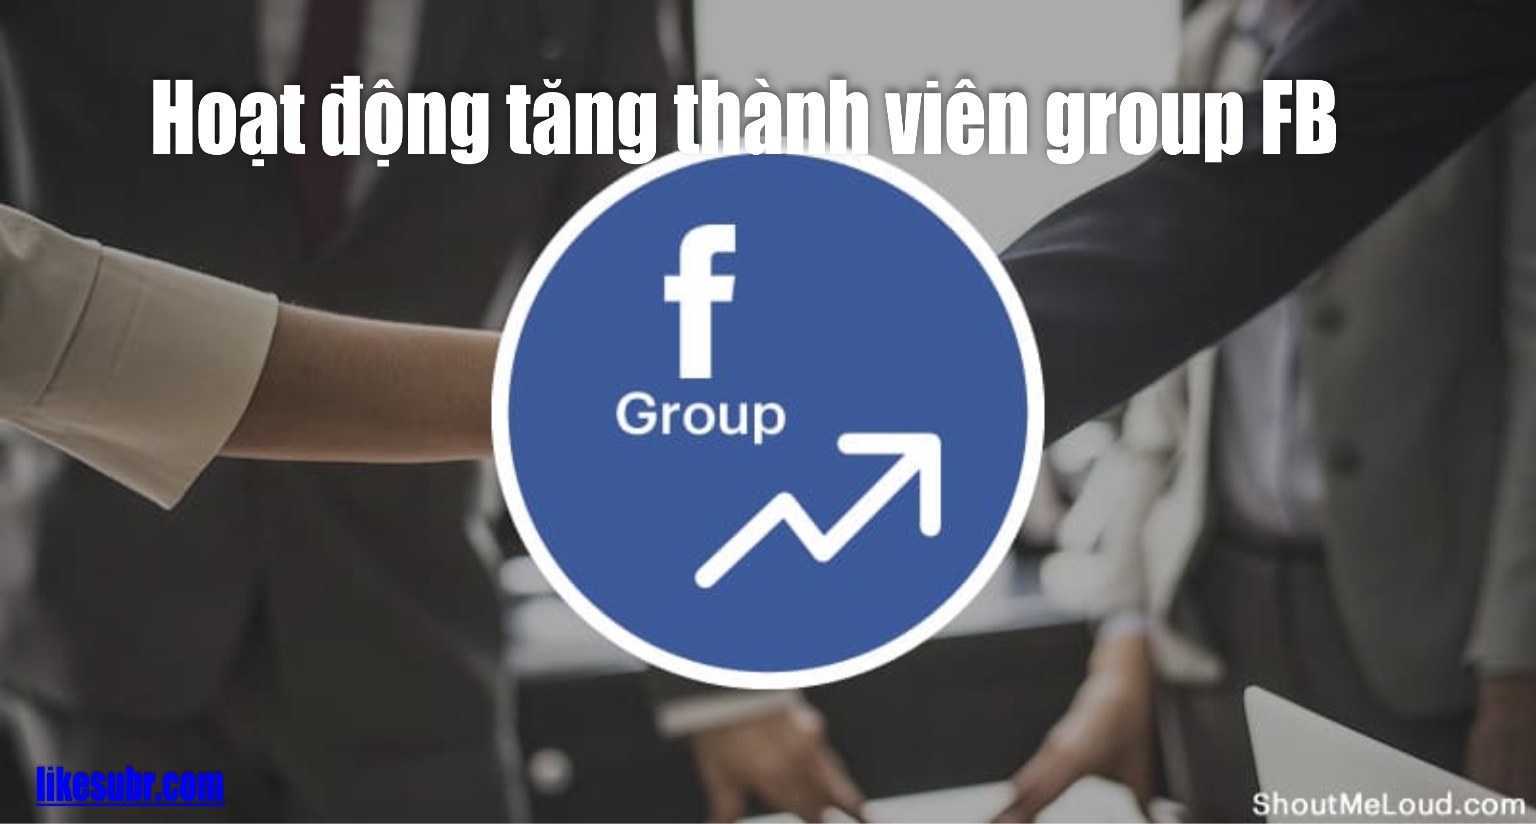 Hoạt động tăng thành viên group FB